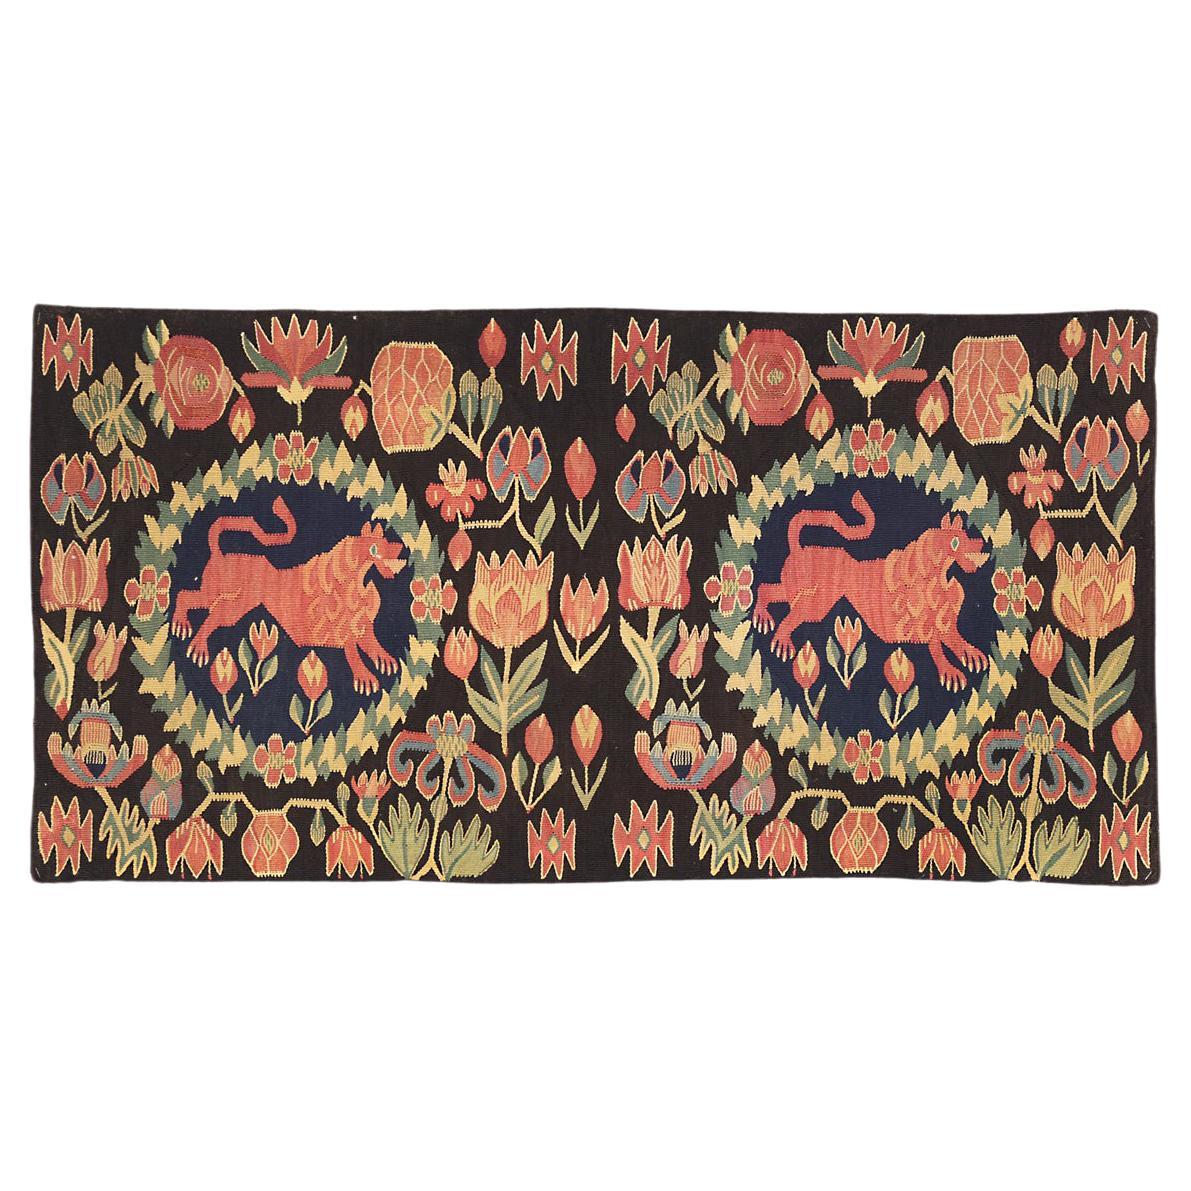 Es handelt sich um ein seltenes schwedisches Textil aus dem 18. Jahrhundert, das auf eine Unterlage montiert und gerahmt wurde und die Maße 103 x 48 cm hat. Dieses einzigartige europäische Textil zeigt zwei Löwenmotive in einem Halo-Muster, das von